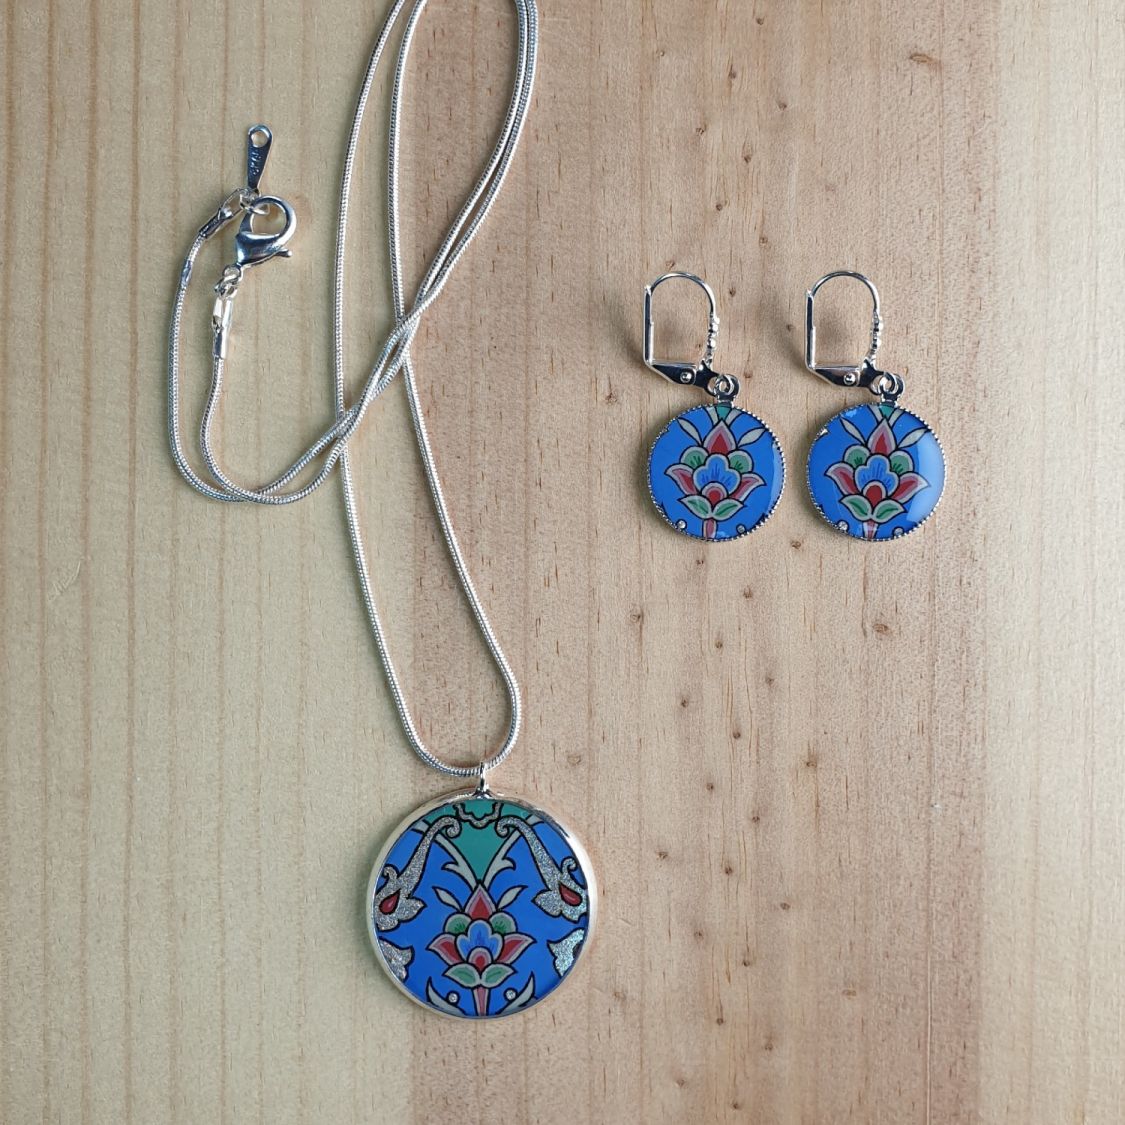 Boucles d'oreille pendantes enluminées fleur et arabesques bleu/argenté/vert/rosé